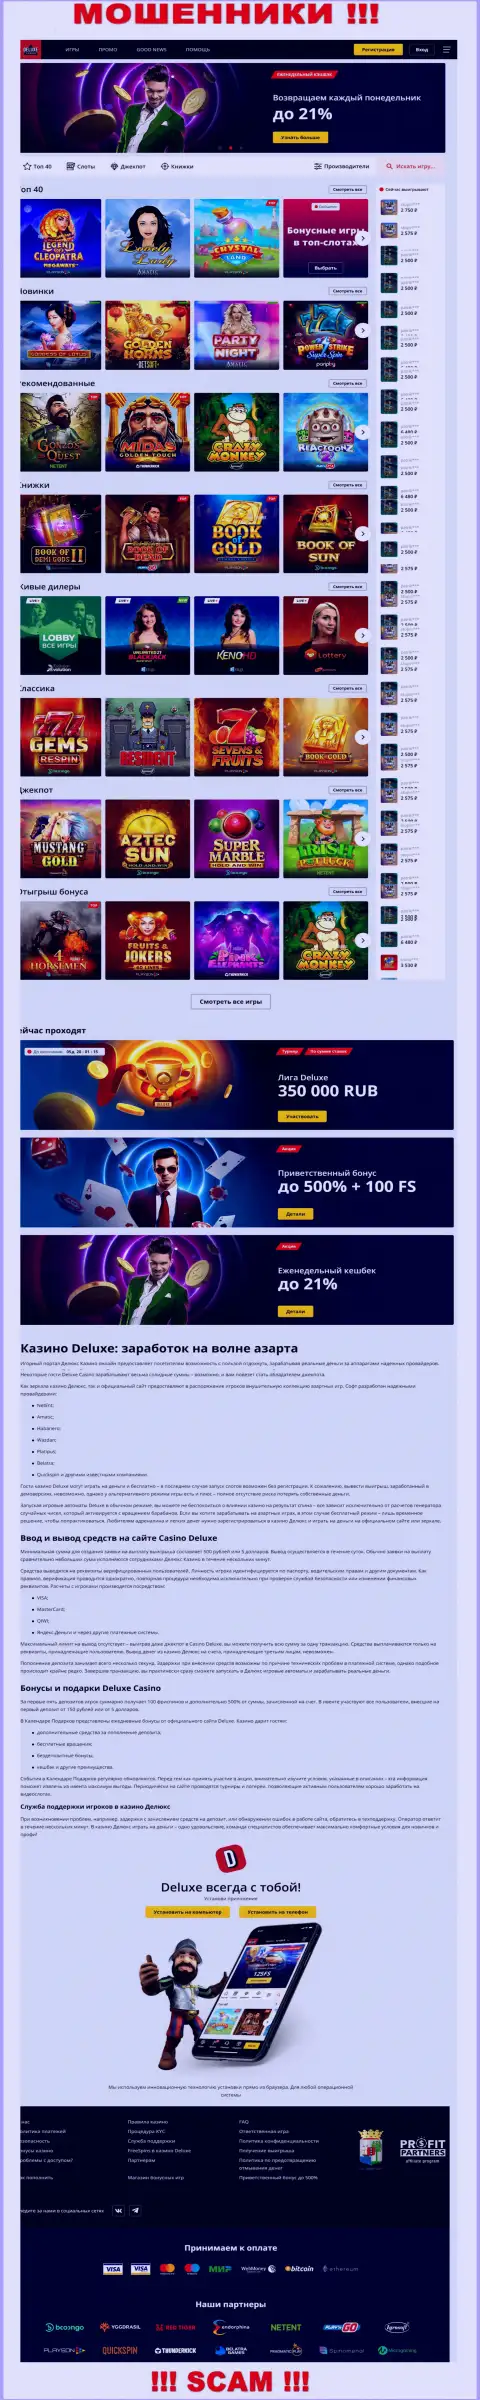 Официальная страница компании Deluxe Casino